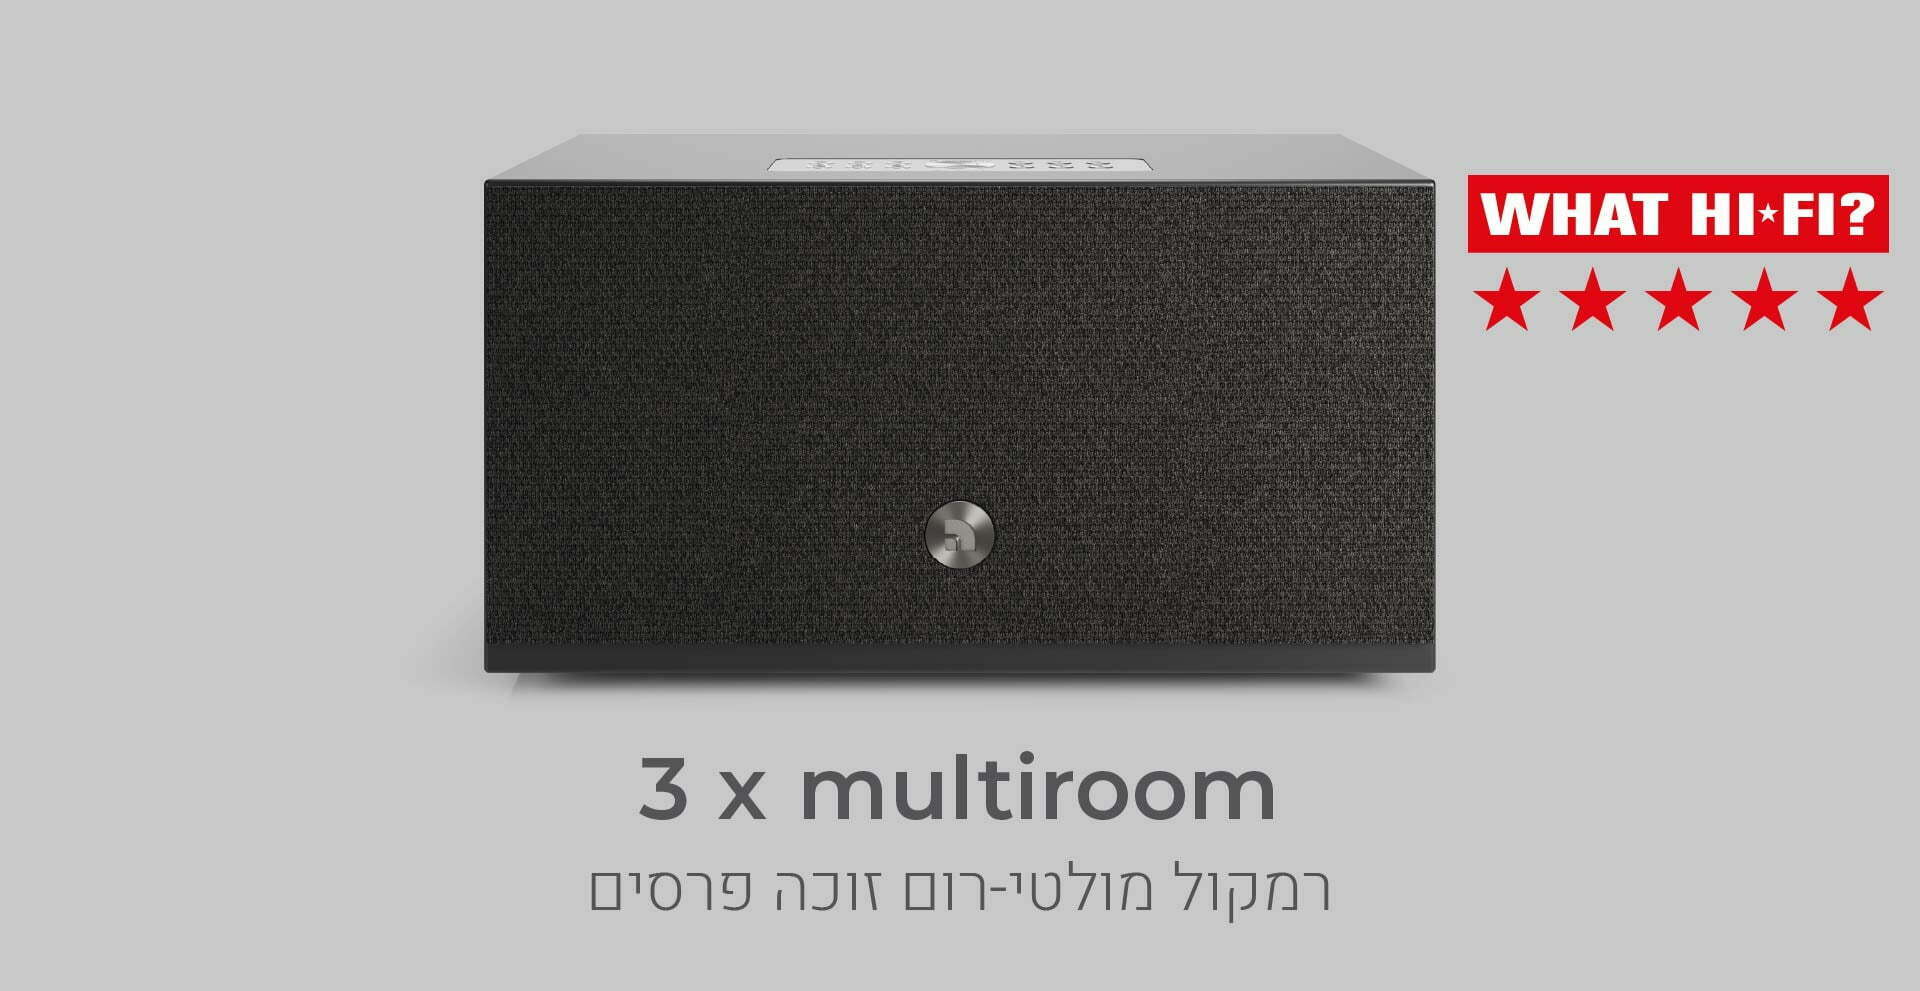 רמקול  Audio Pro ADDON C10 MKII